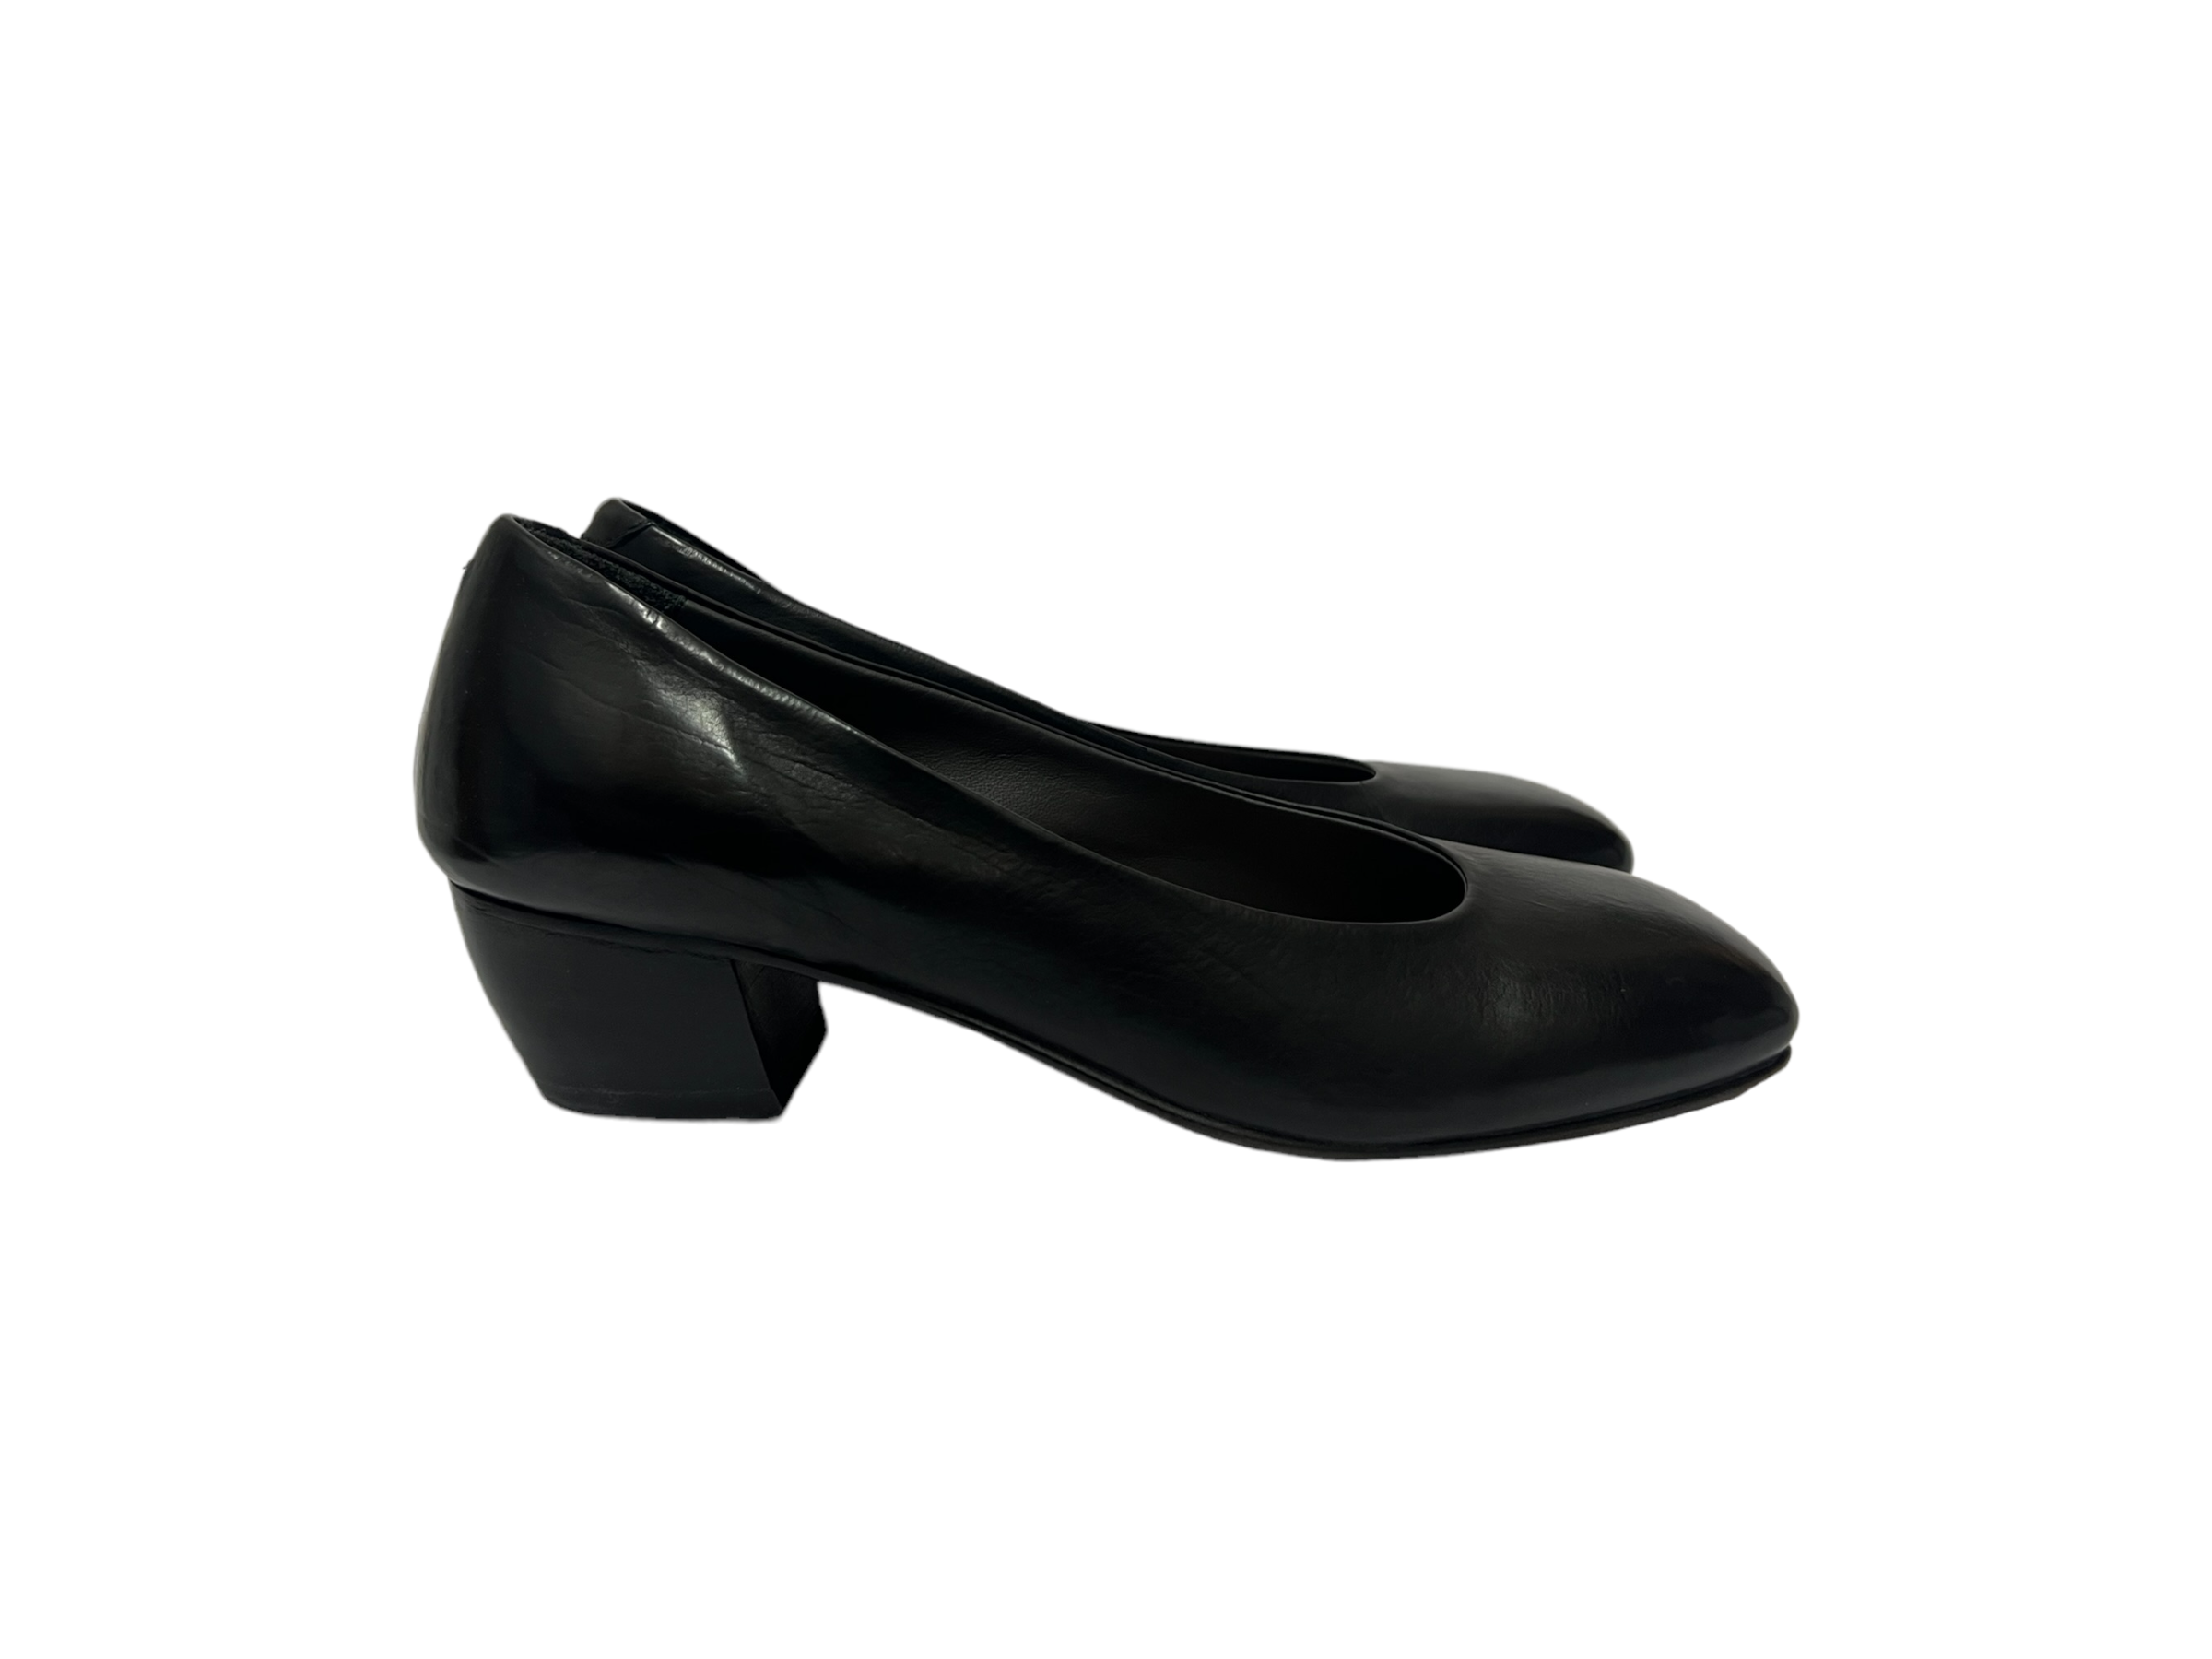 smal landsby pension Moma sko med lille hæl, sort - MOMA - Fiona sko